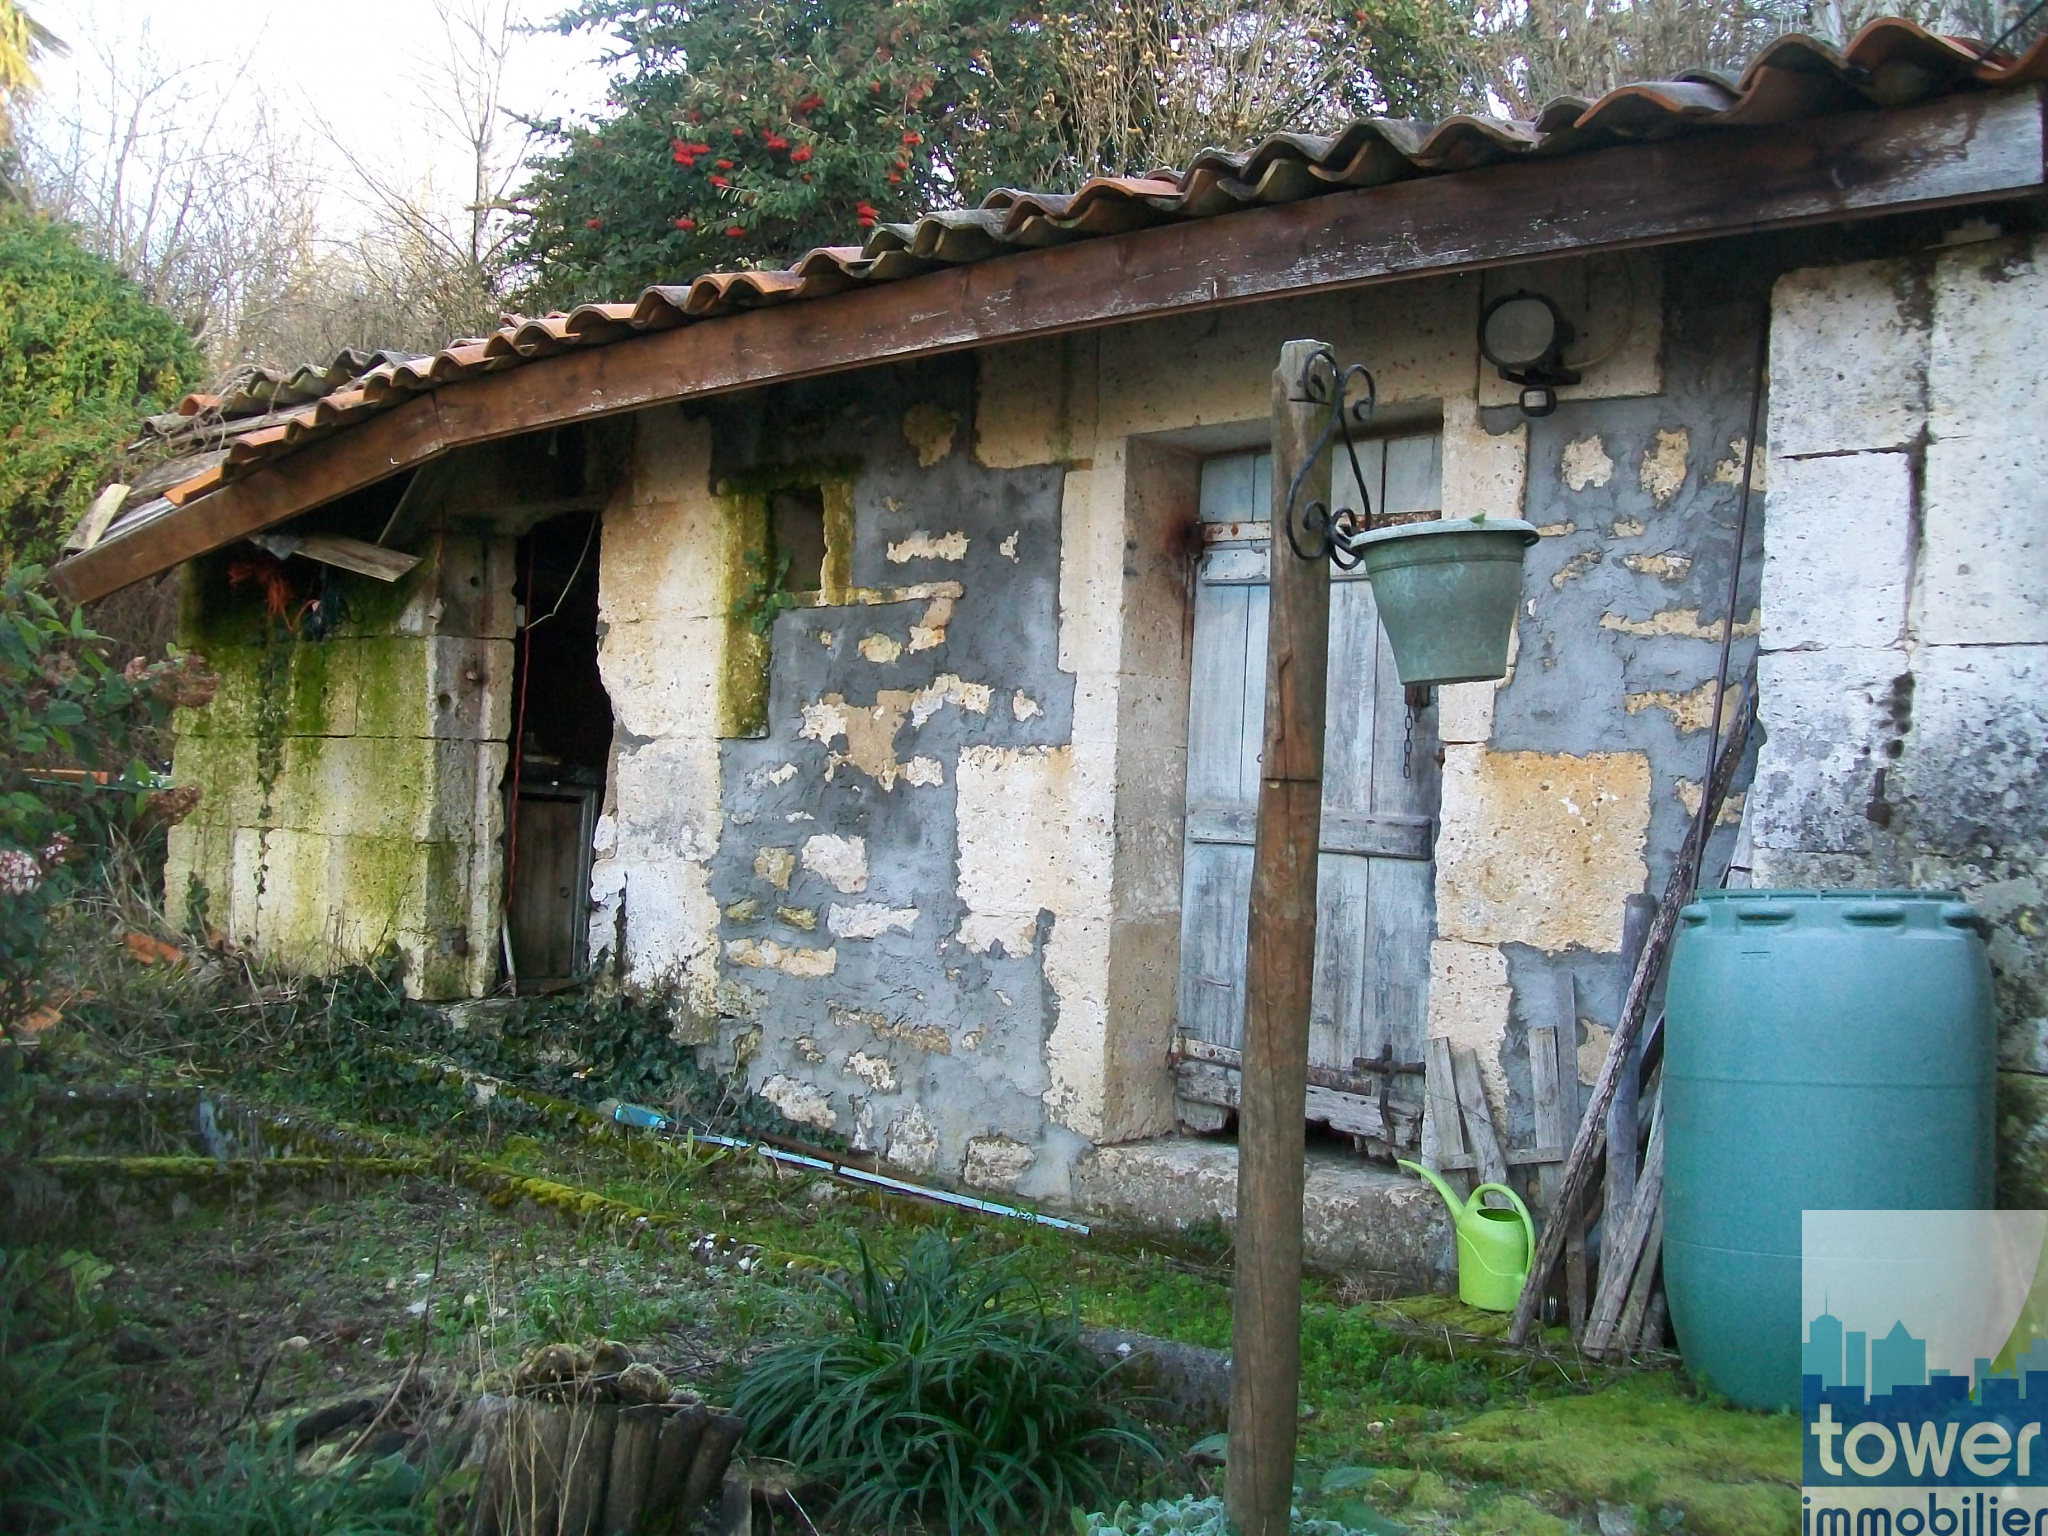 2ème dépendance (toit) de la maison à rénover près de Sers à 15 mn de Soyaux